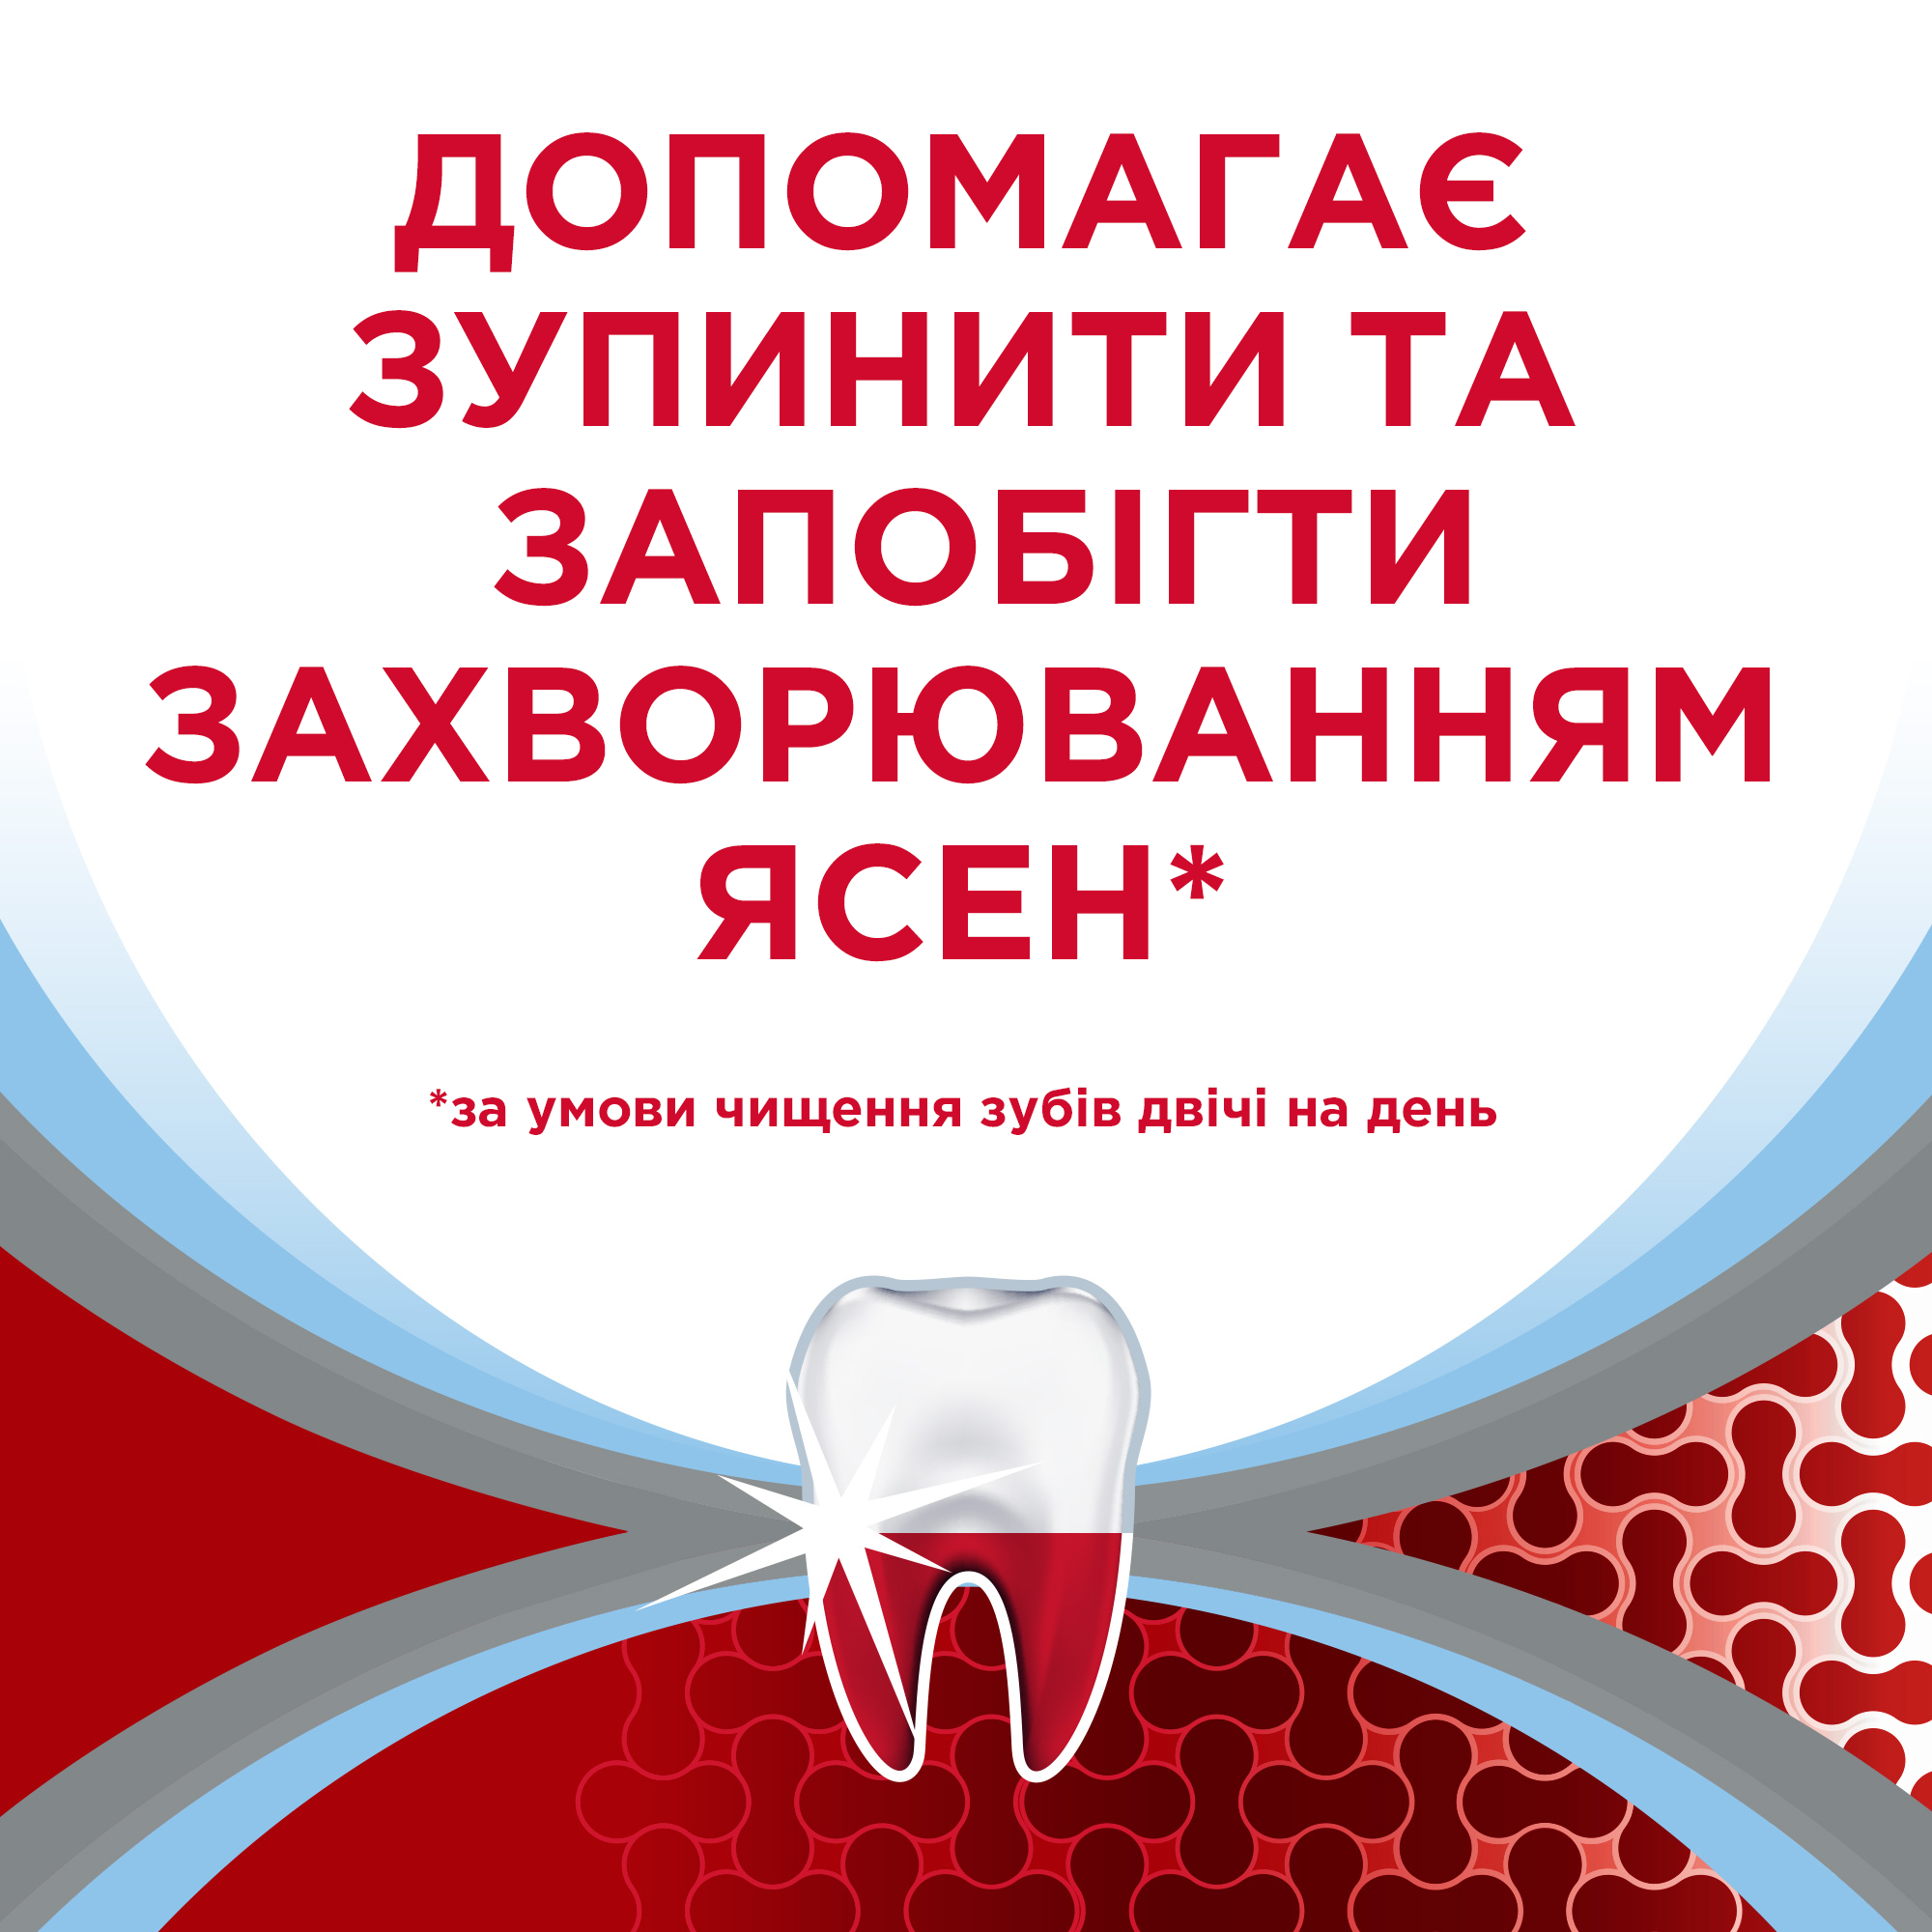 Зубная паста Parodontax Комплексная защита Экстра Свежесть, 50 мл - фото 10